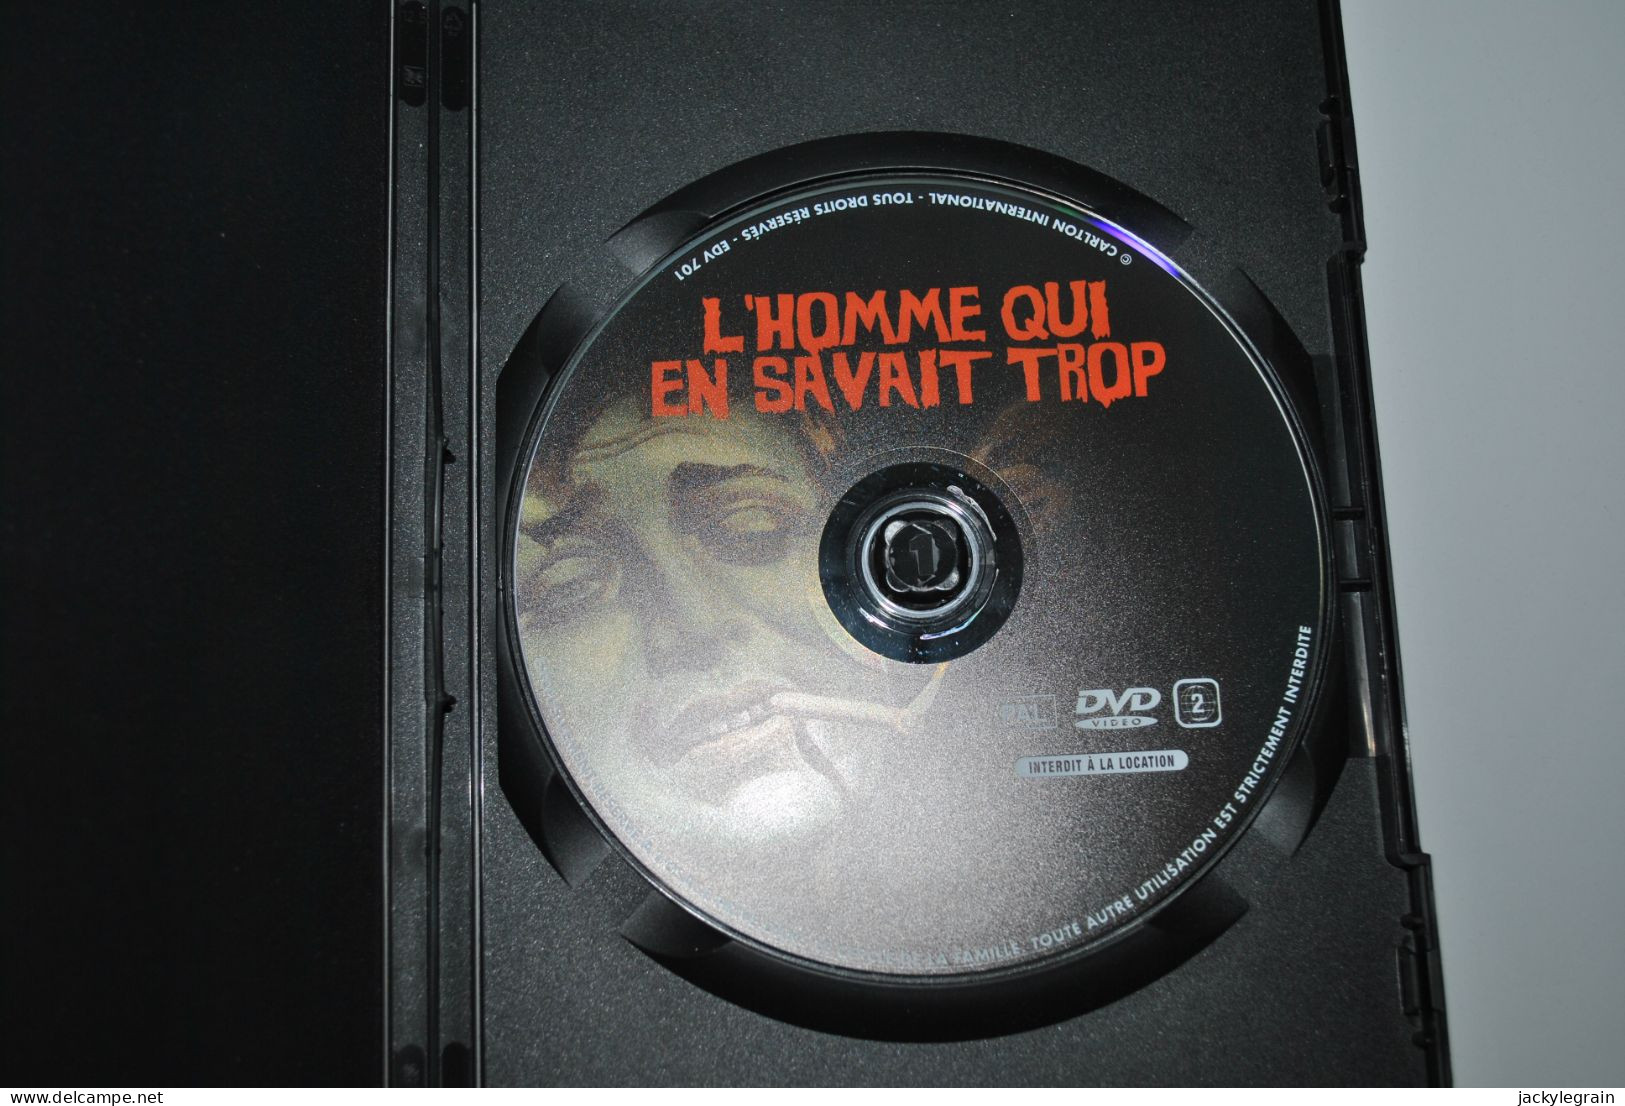 DVD "Homme Savait Trop"/Hitchcock VO Anglais /ST Français Comme Neuf Vente En Belgique Uniquement Envoi Bpost 3 € - Klassiker